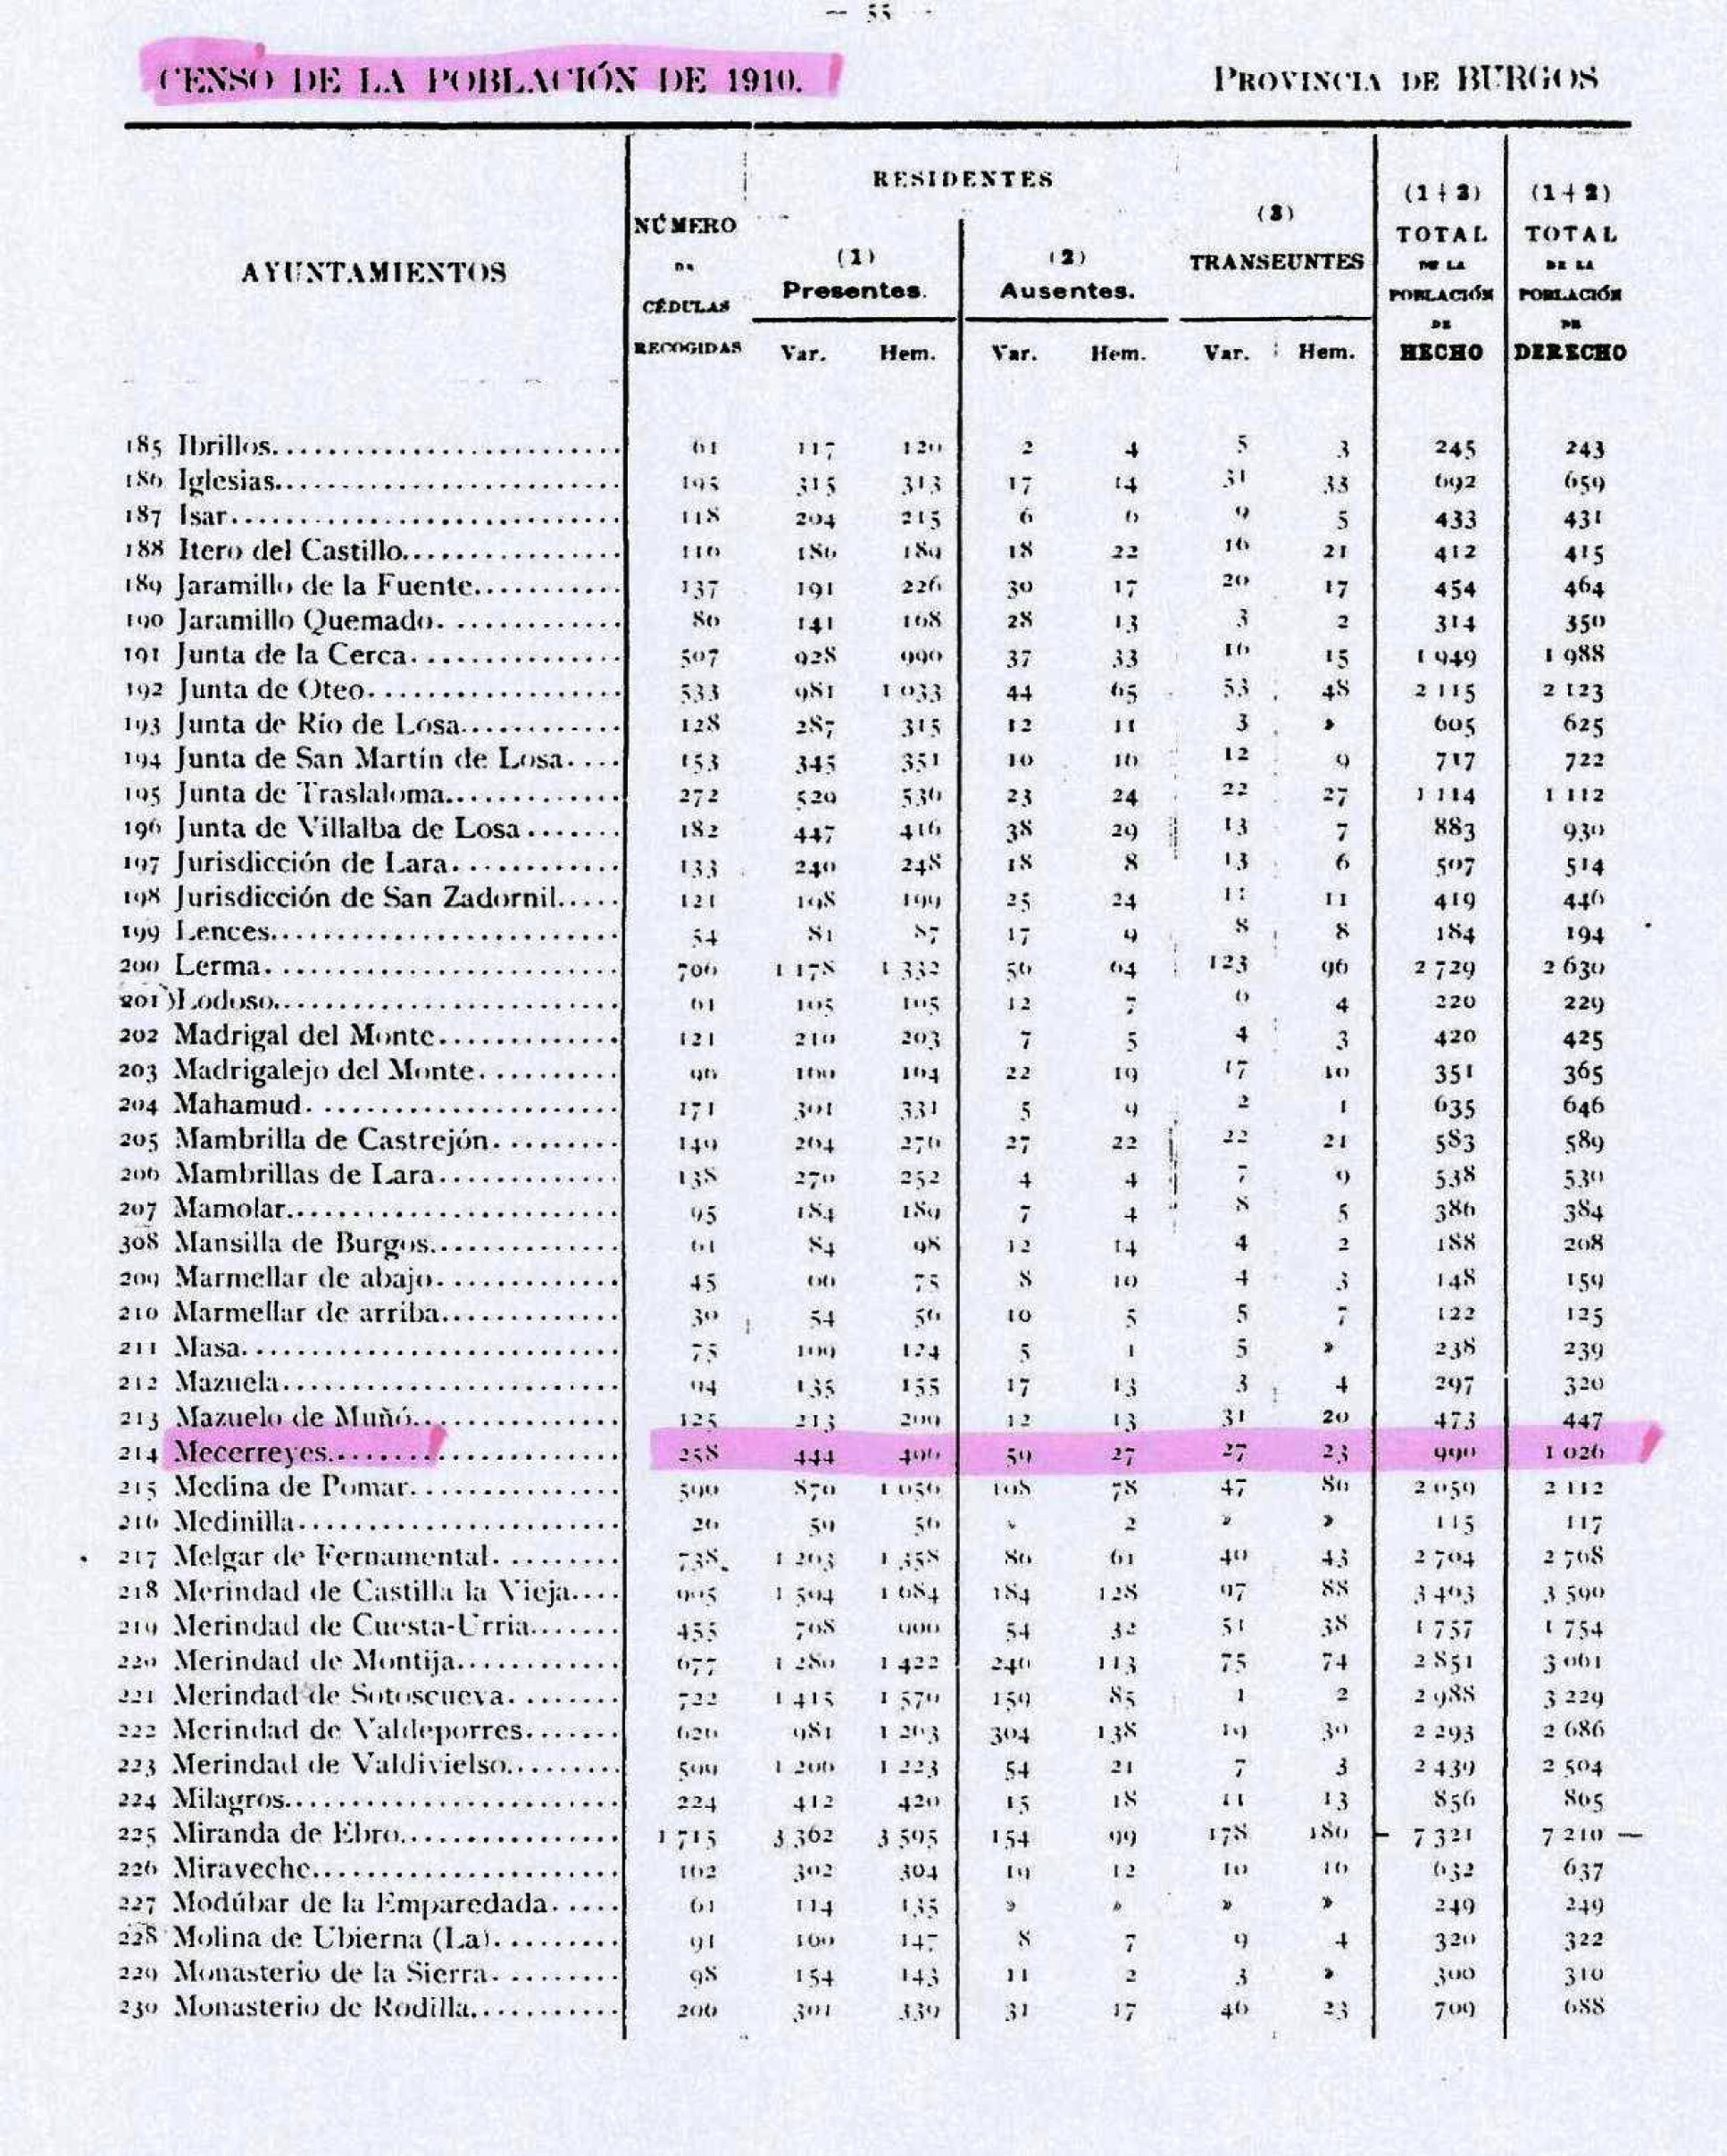 Tabla 2. Censo de la población en el año 1910 en la provincia de Burgos.